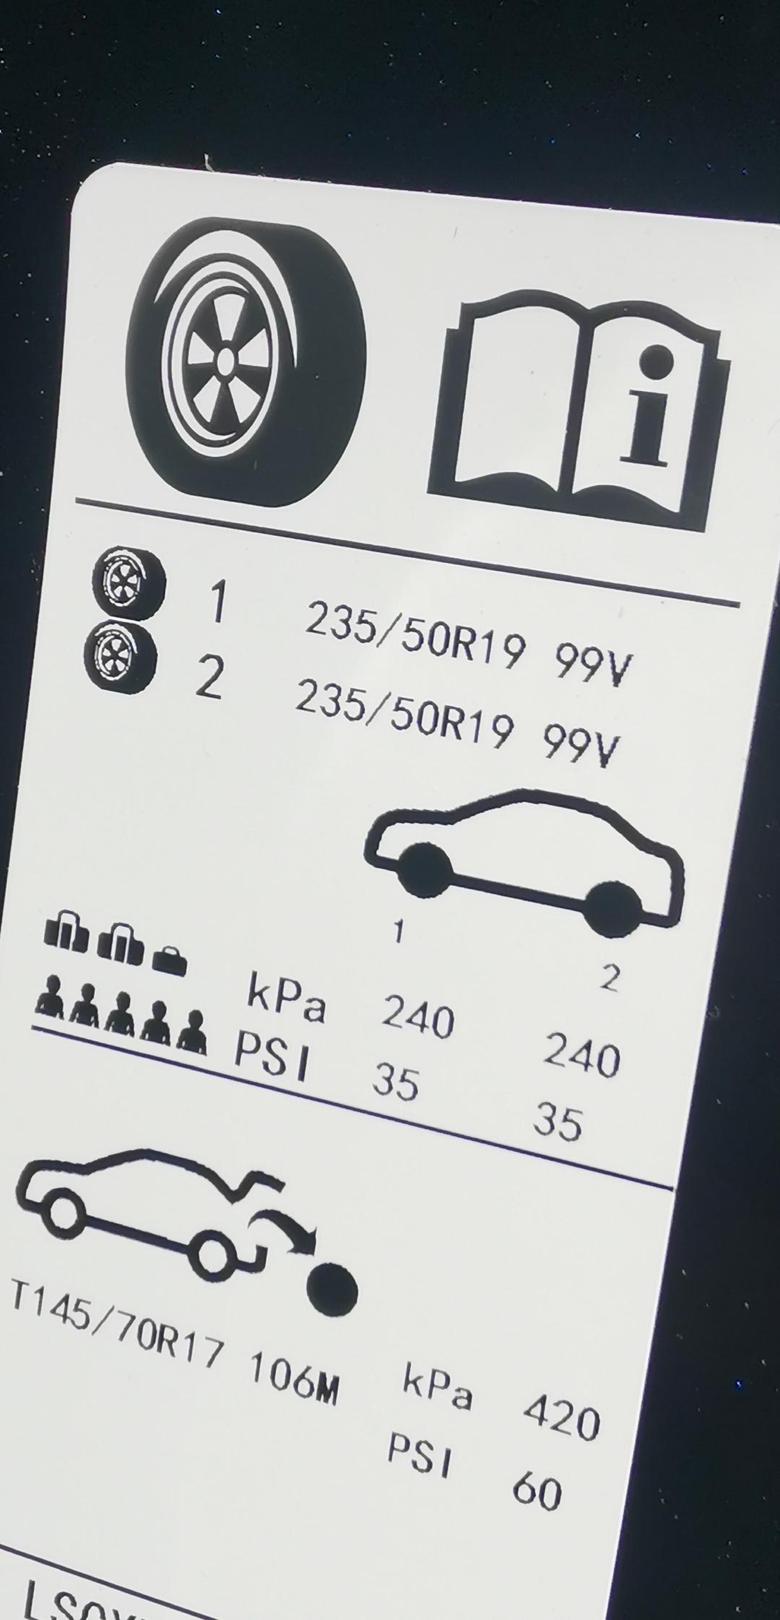 这图是不是表示昂科威冷车时胎压标准为240呀。